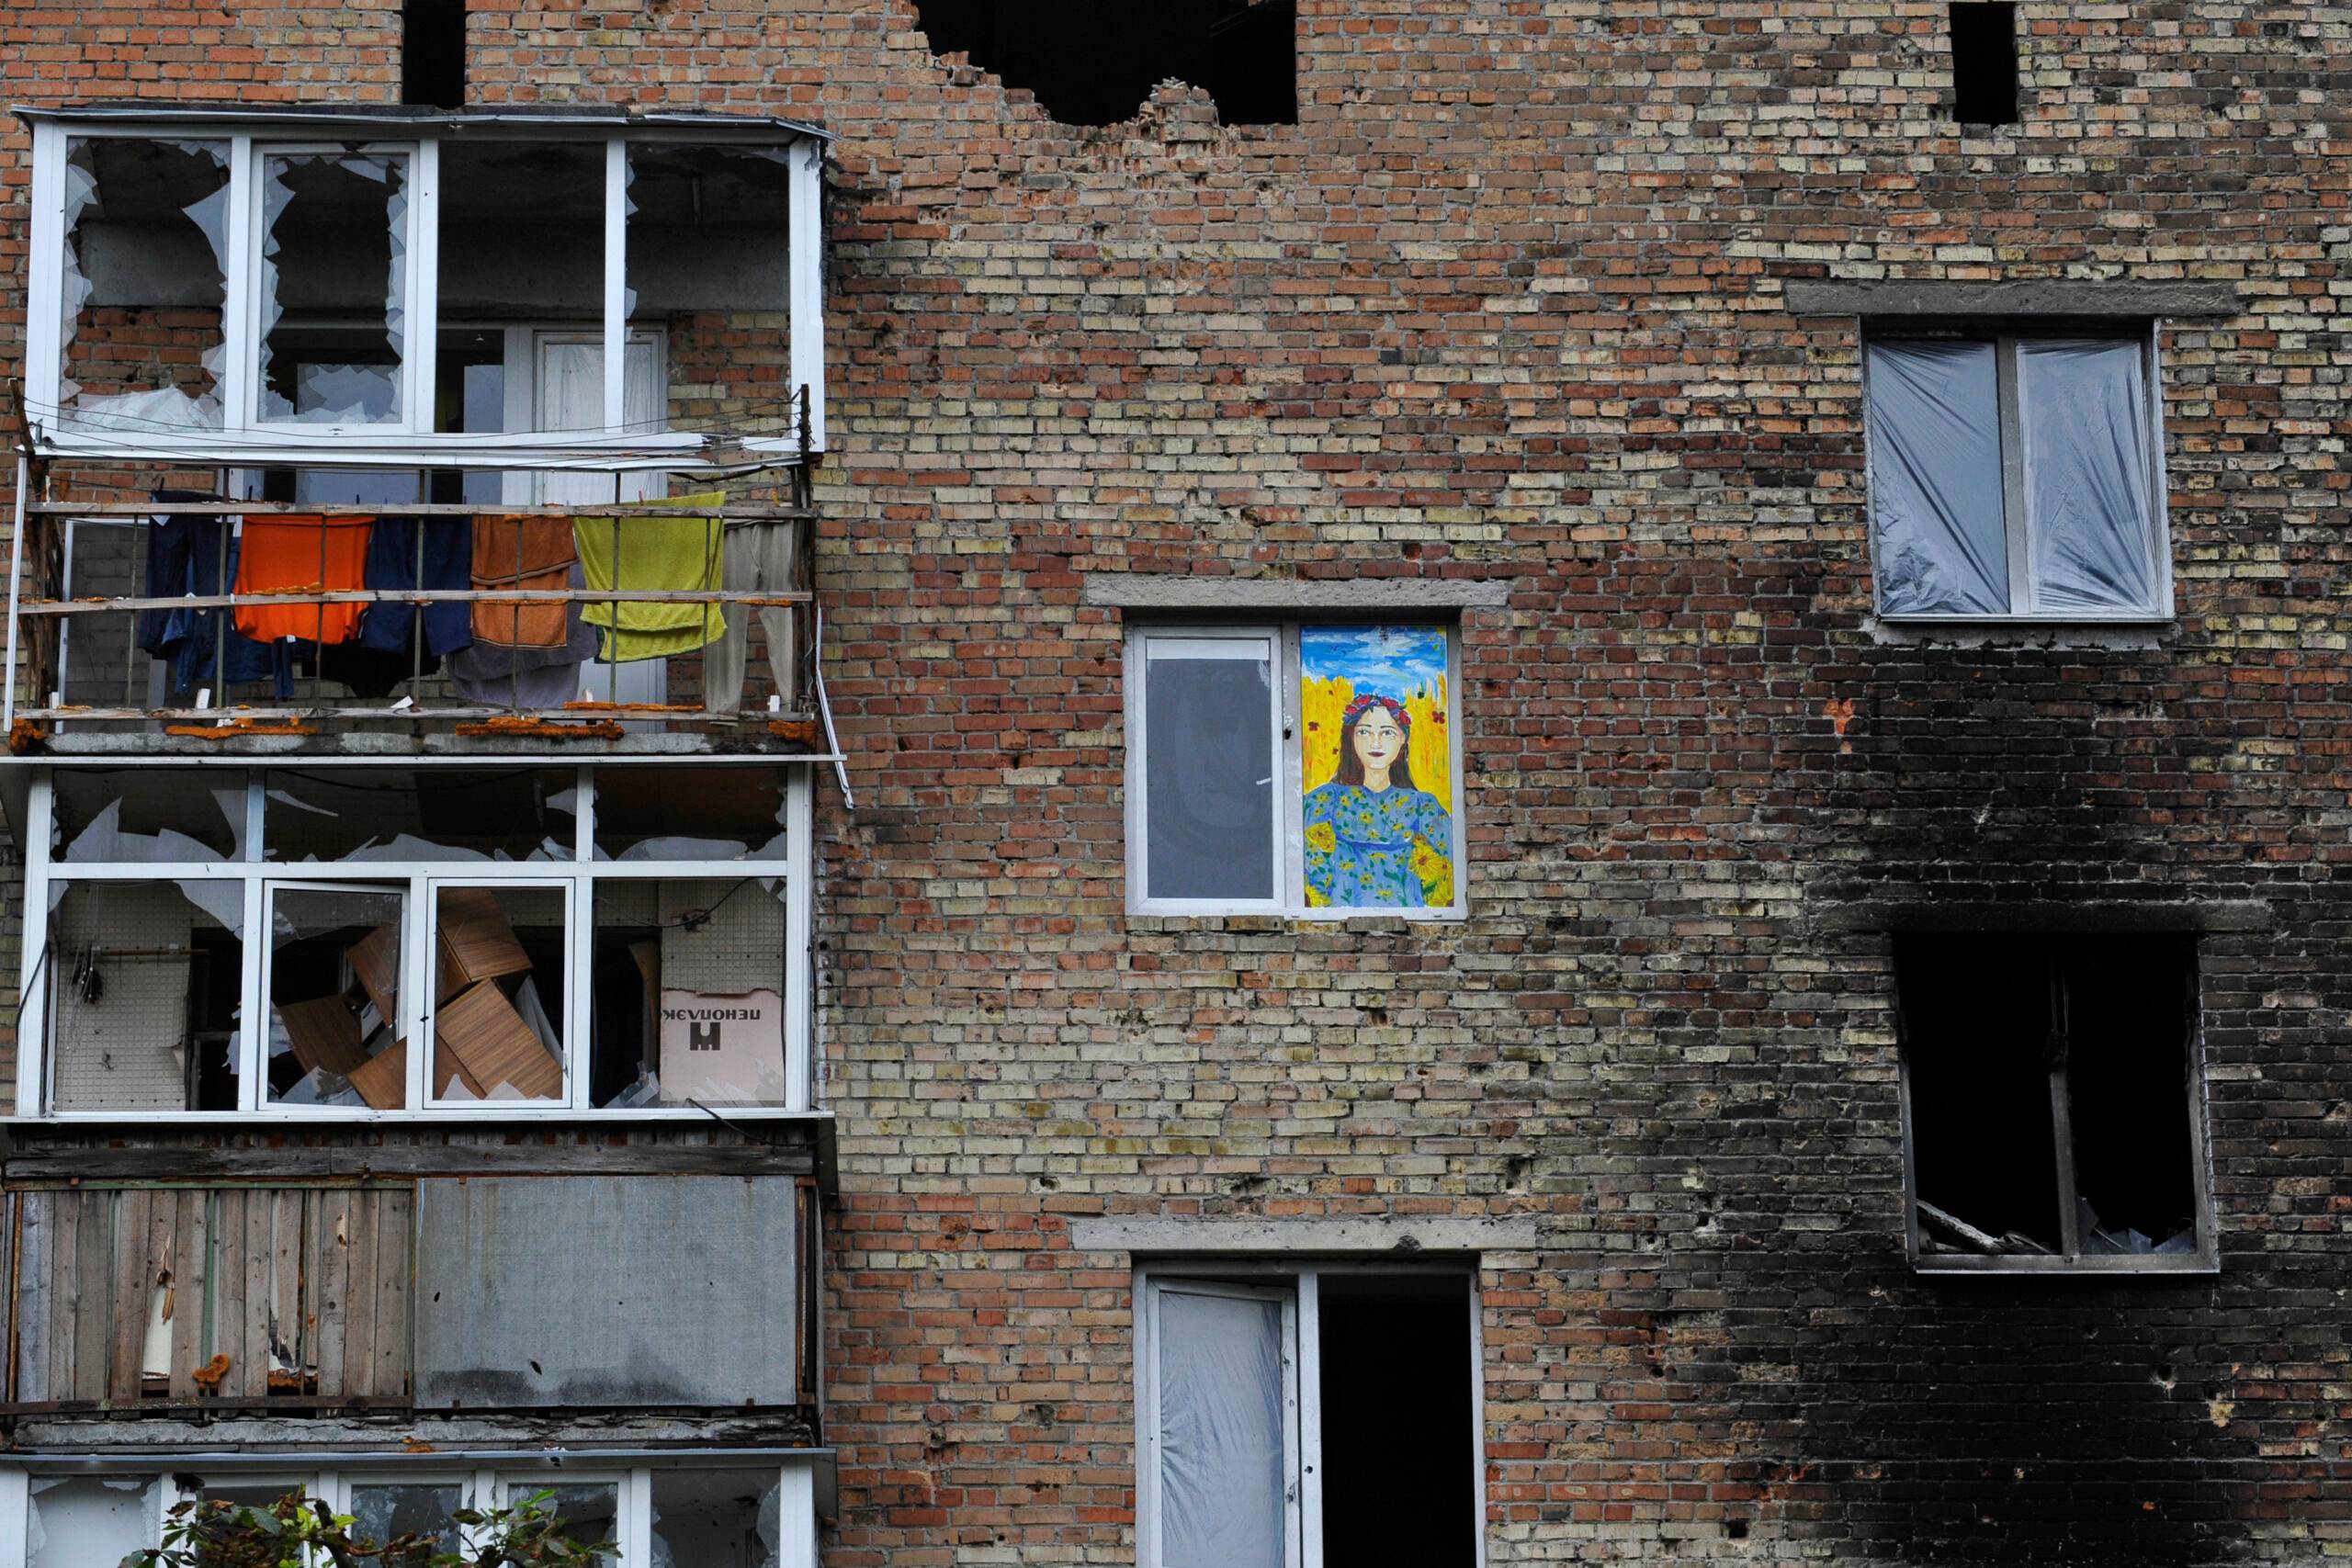 Zniszczony dom, w oknie - rysunek przedstawiający kobietę w niebieskim i żółtym kolorze (barwach Ukrainy)